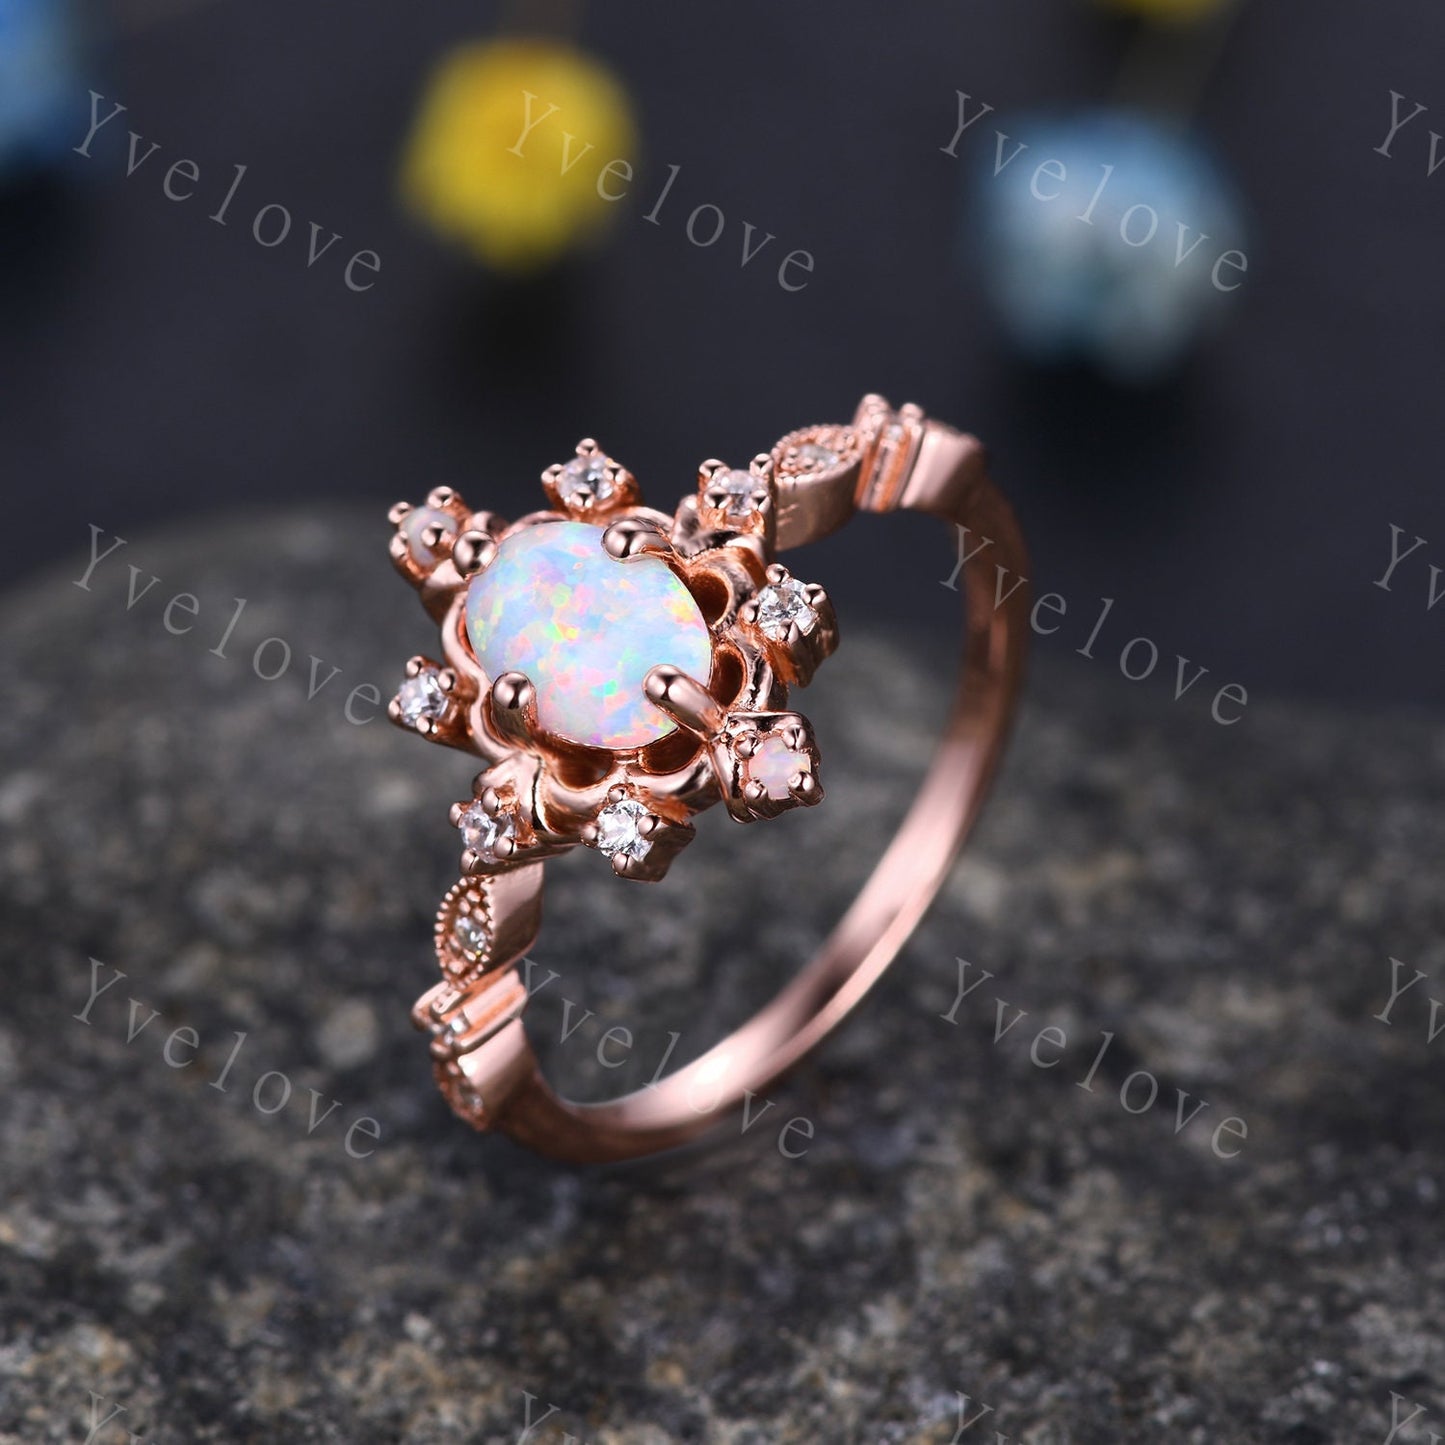 Vintage Opal Ring 14K Rose Gold Engagement Ring Promise Ring October Birthstone Diamond Ring Elegant Anniversary Birthday Gift For Mom Her